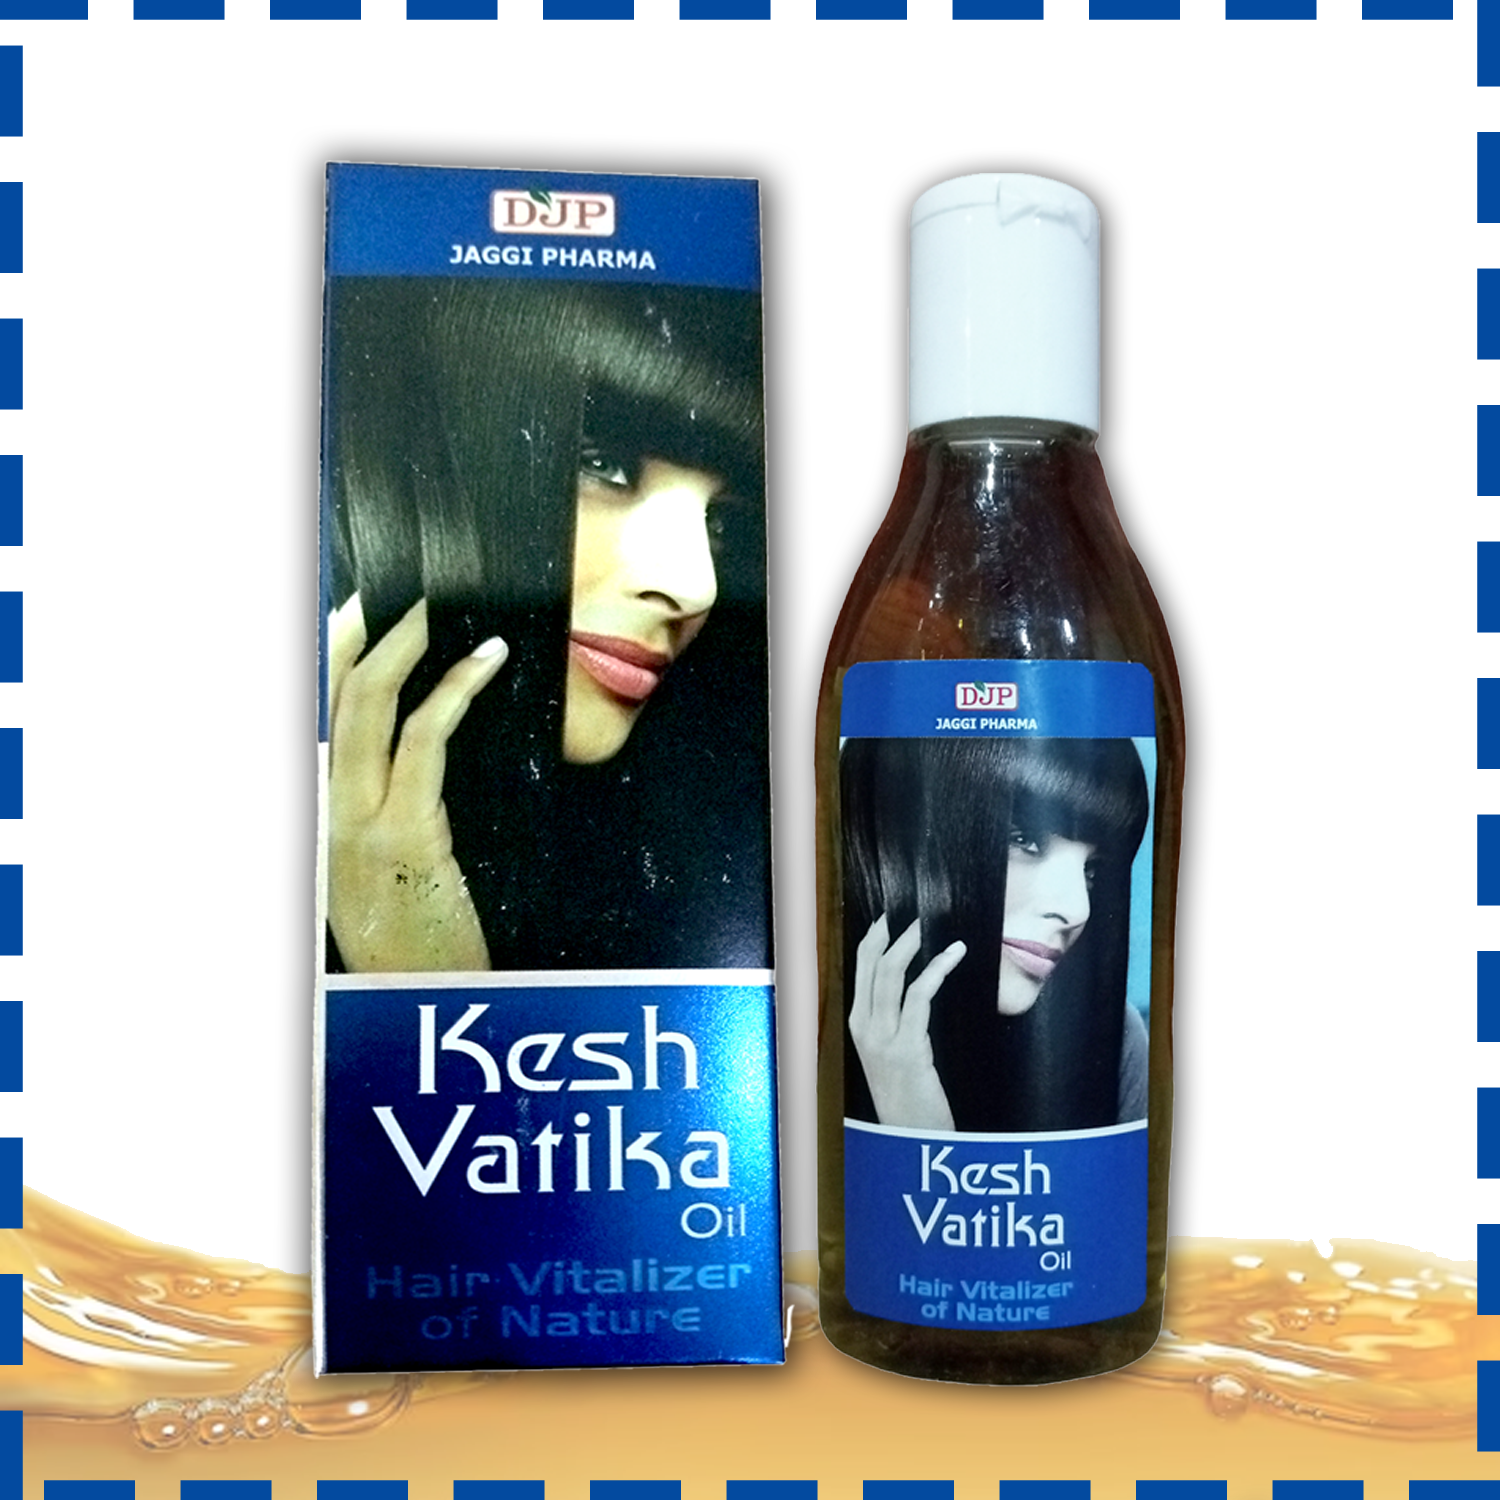 Kesh Vatika oil: Hair Growth Vitalizer - Boosts hair growth, Prevents hair fall